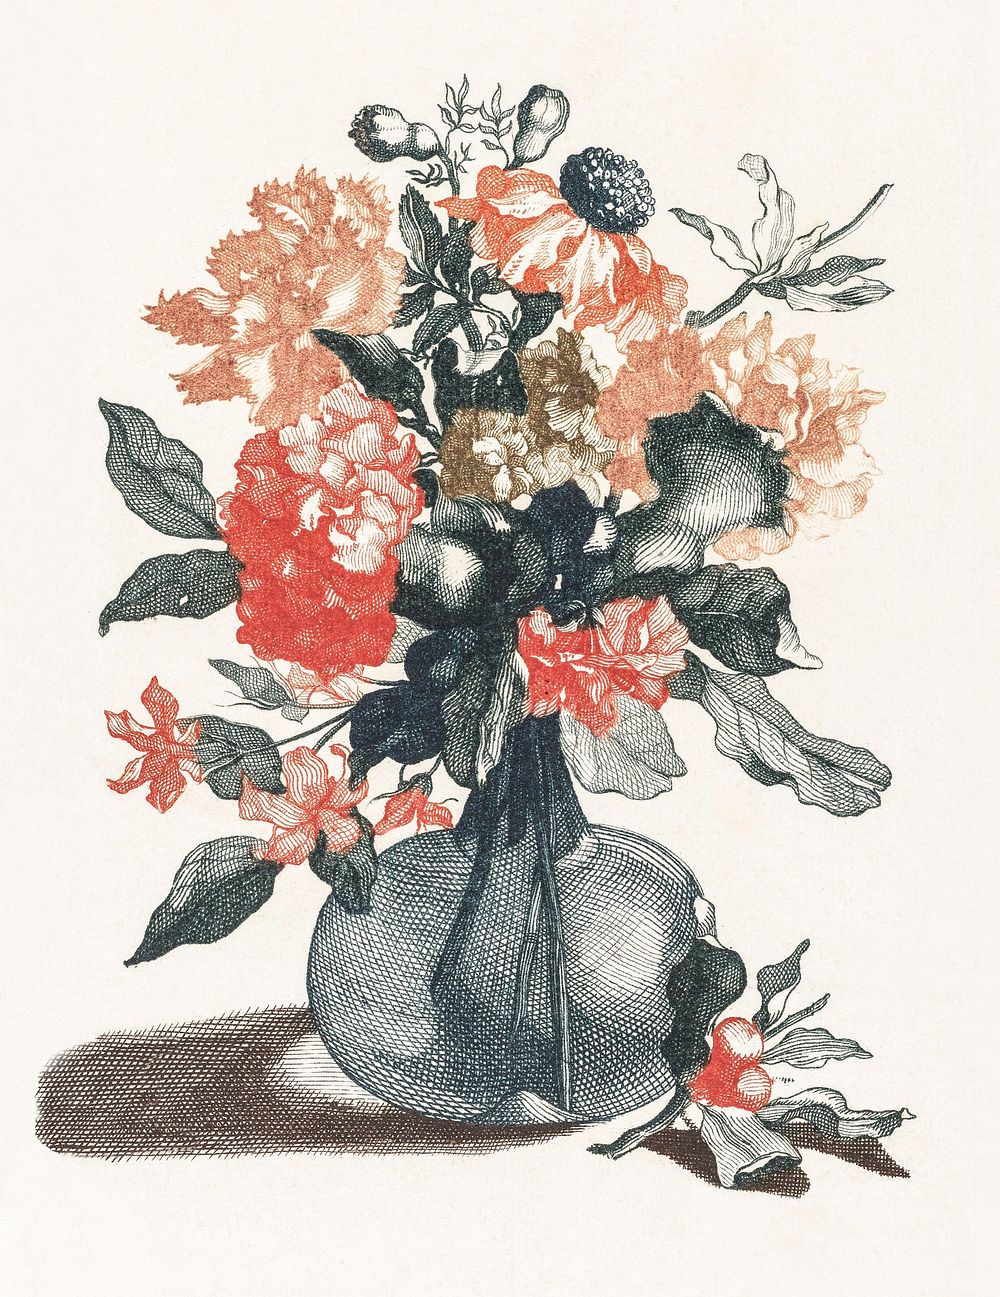 Flowers in a vase (1688-1698) by Johan Teyler (1648-1709). Original from The Rijksmuseum. Digitally enhanced by rawpixel.